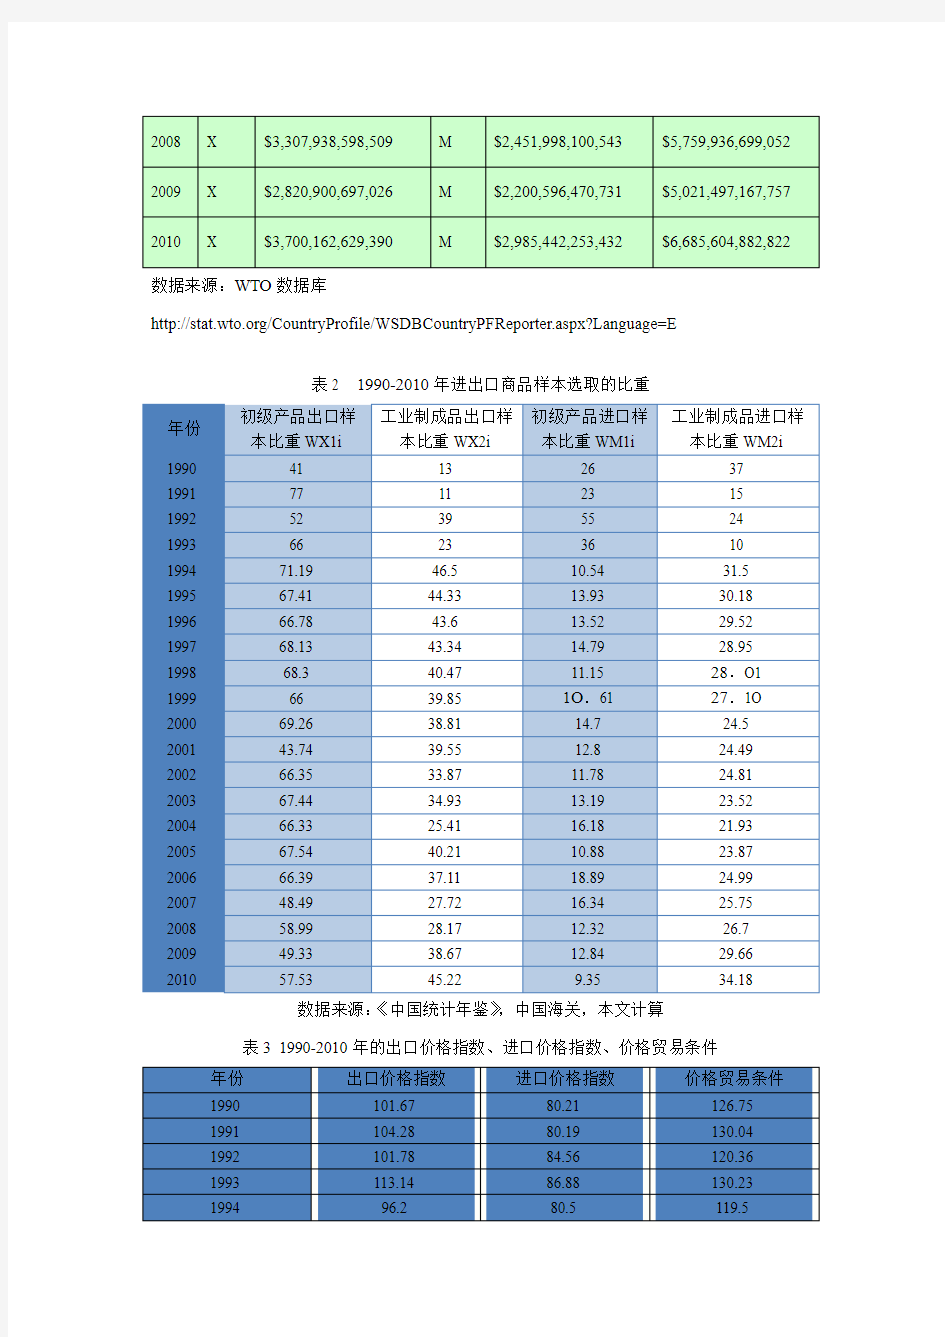 1989-2010年中国贸易条件变化的相关数据